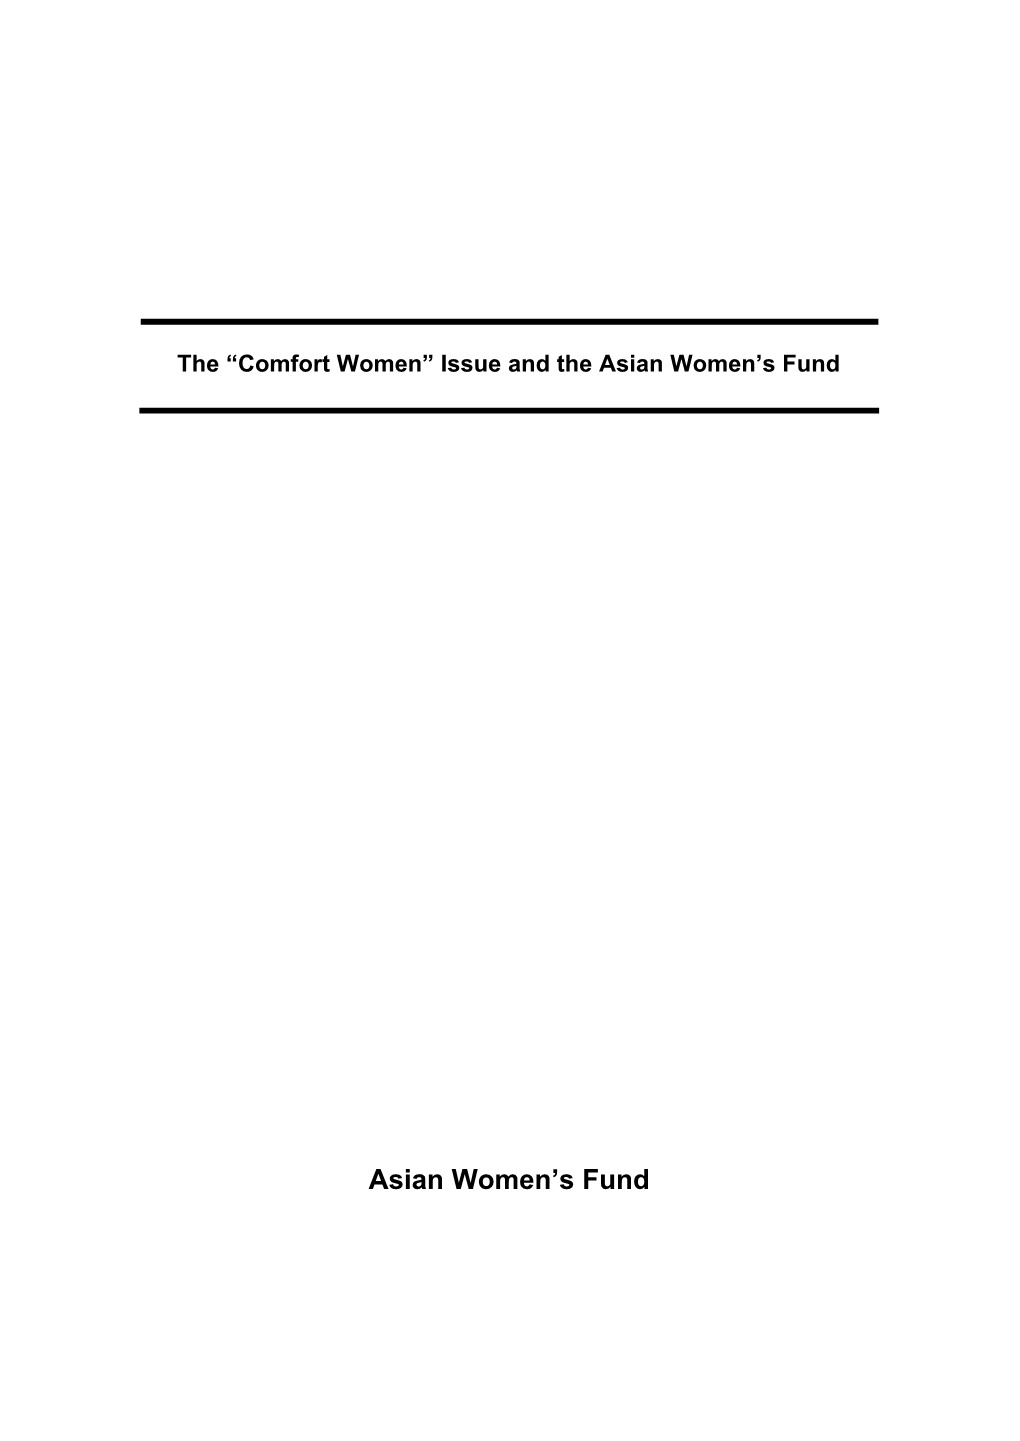 Asian Women's Fund (18 July, 1995) ------58